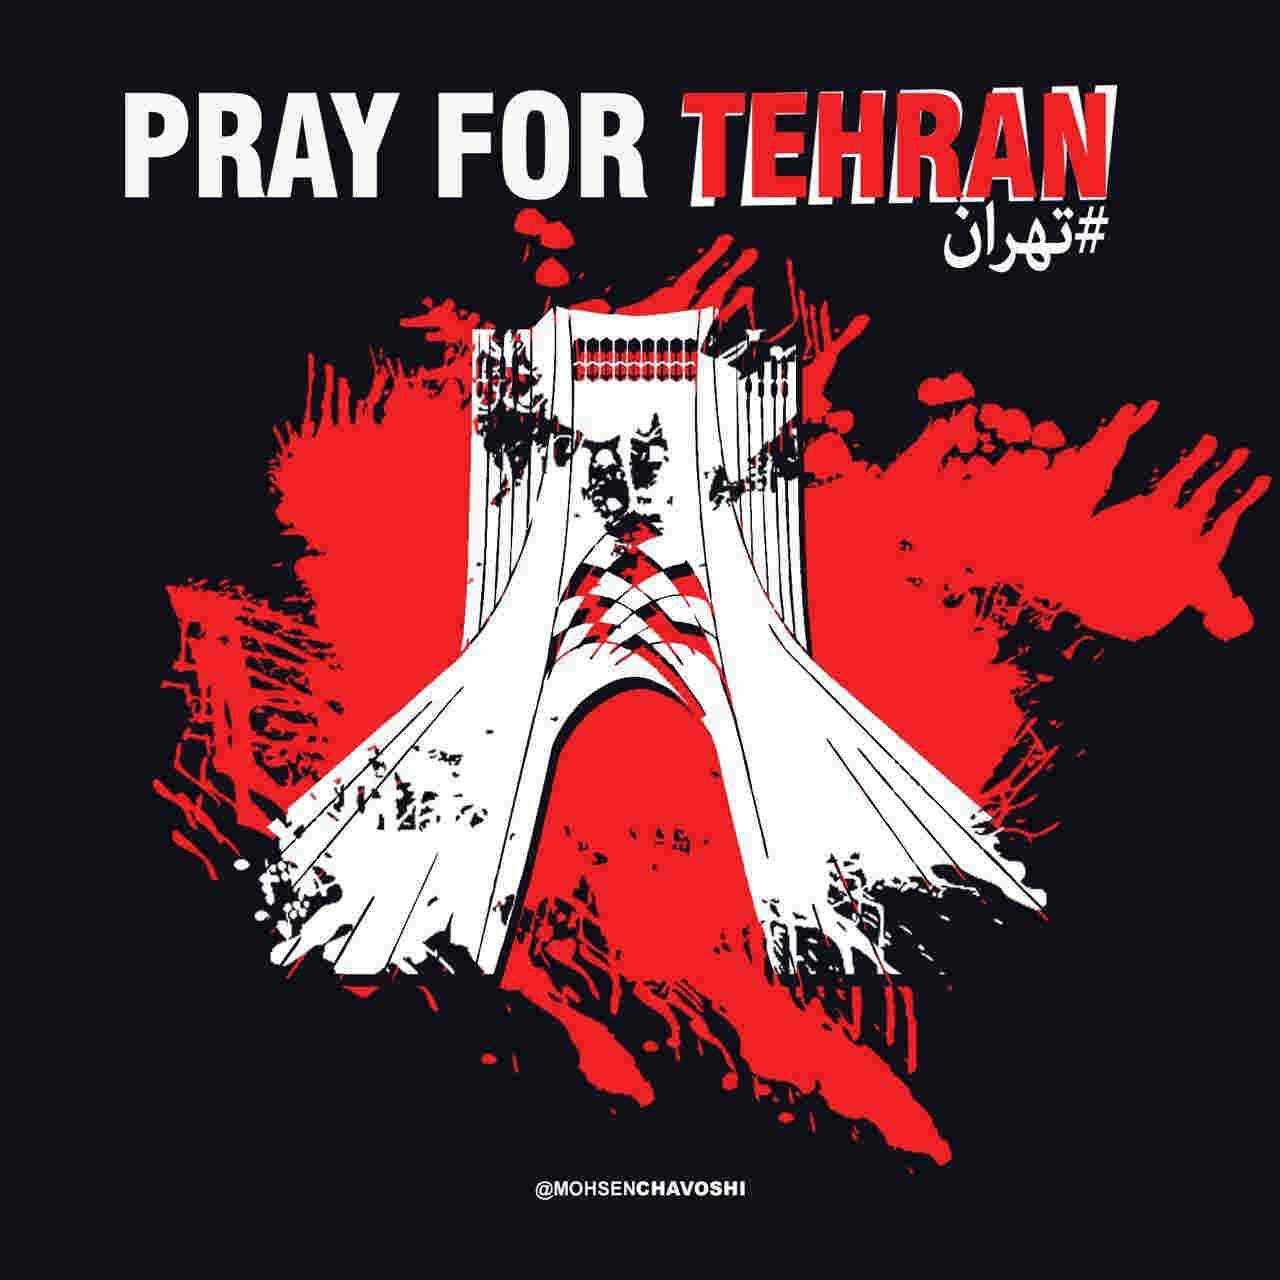 معنی pray for tehran + انتشار متن ها و عکس های اینستاگرامی